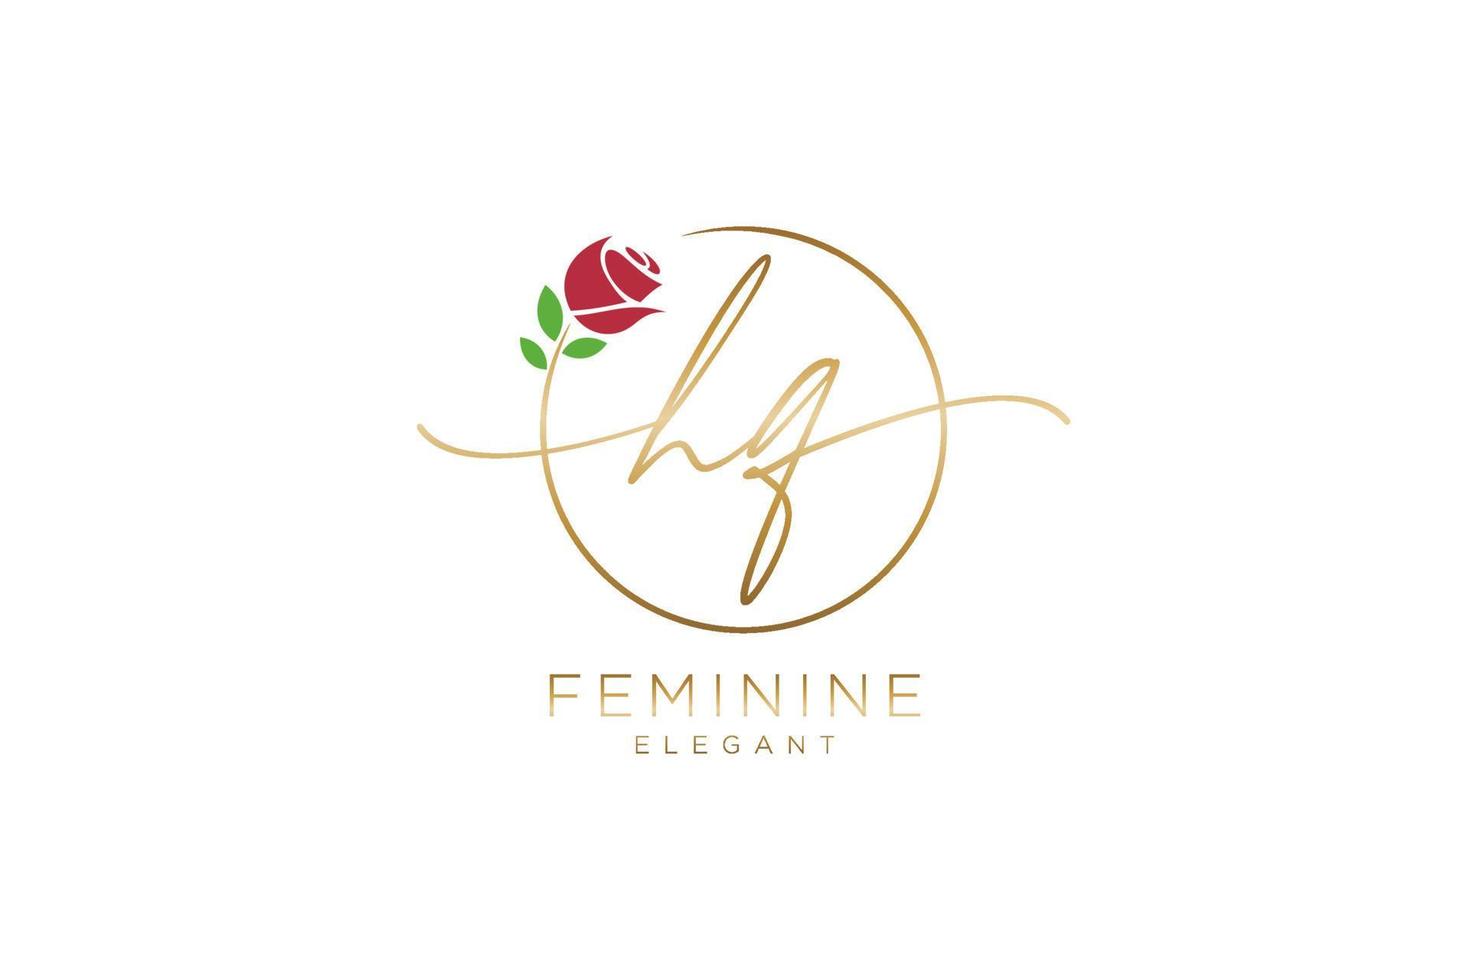 monogramme de beauté du logo féminin hq initial et design élégant du logo, logo manuscrit de la signature initiale, mariage, mode, floral et botanique avec modèle créatif. vecteur